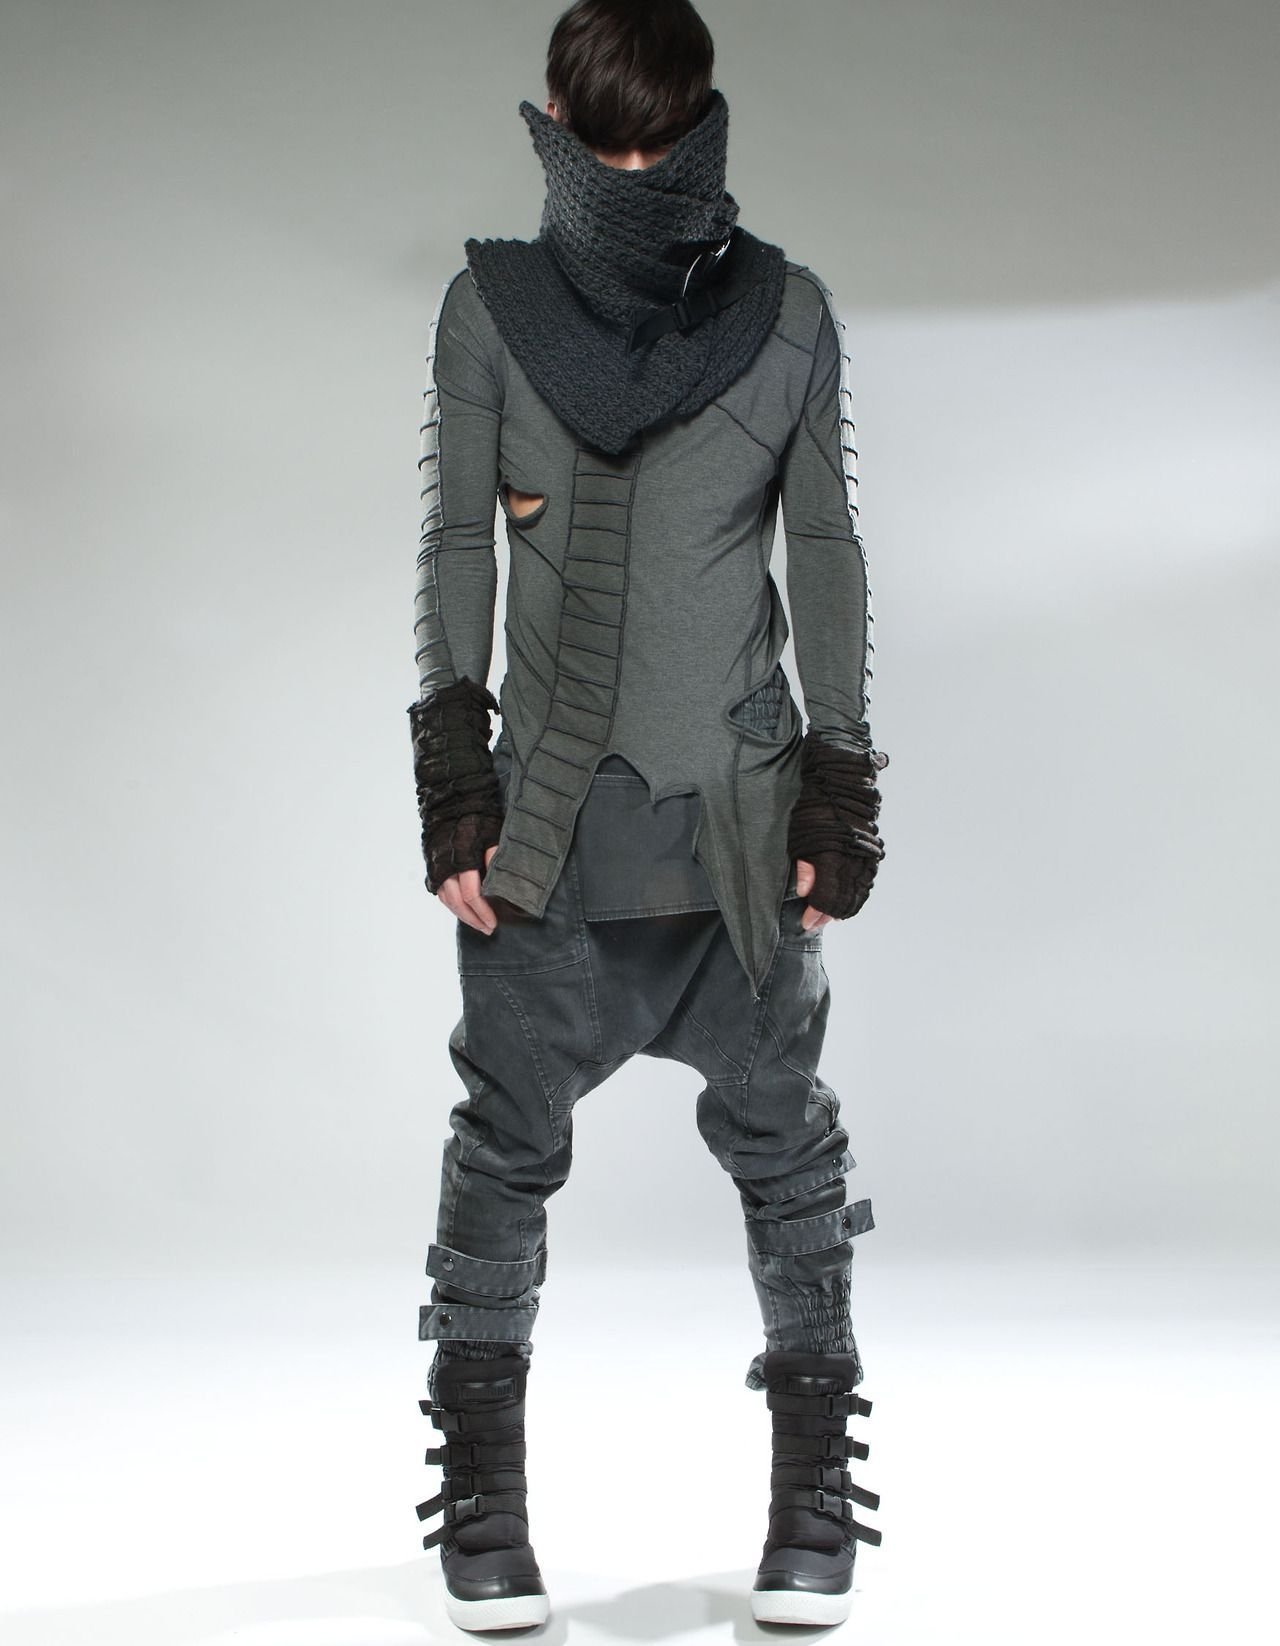 Cyberpunk стиль одежды мужской фото 32